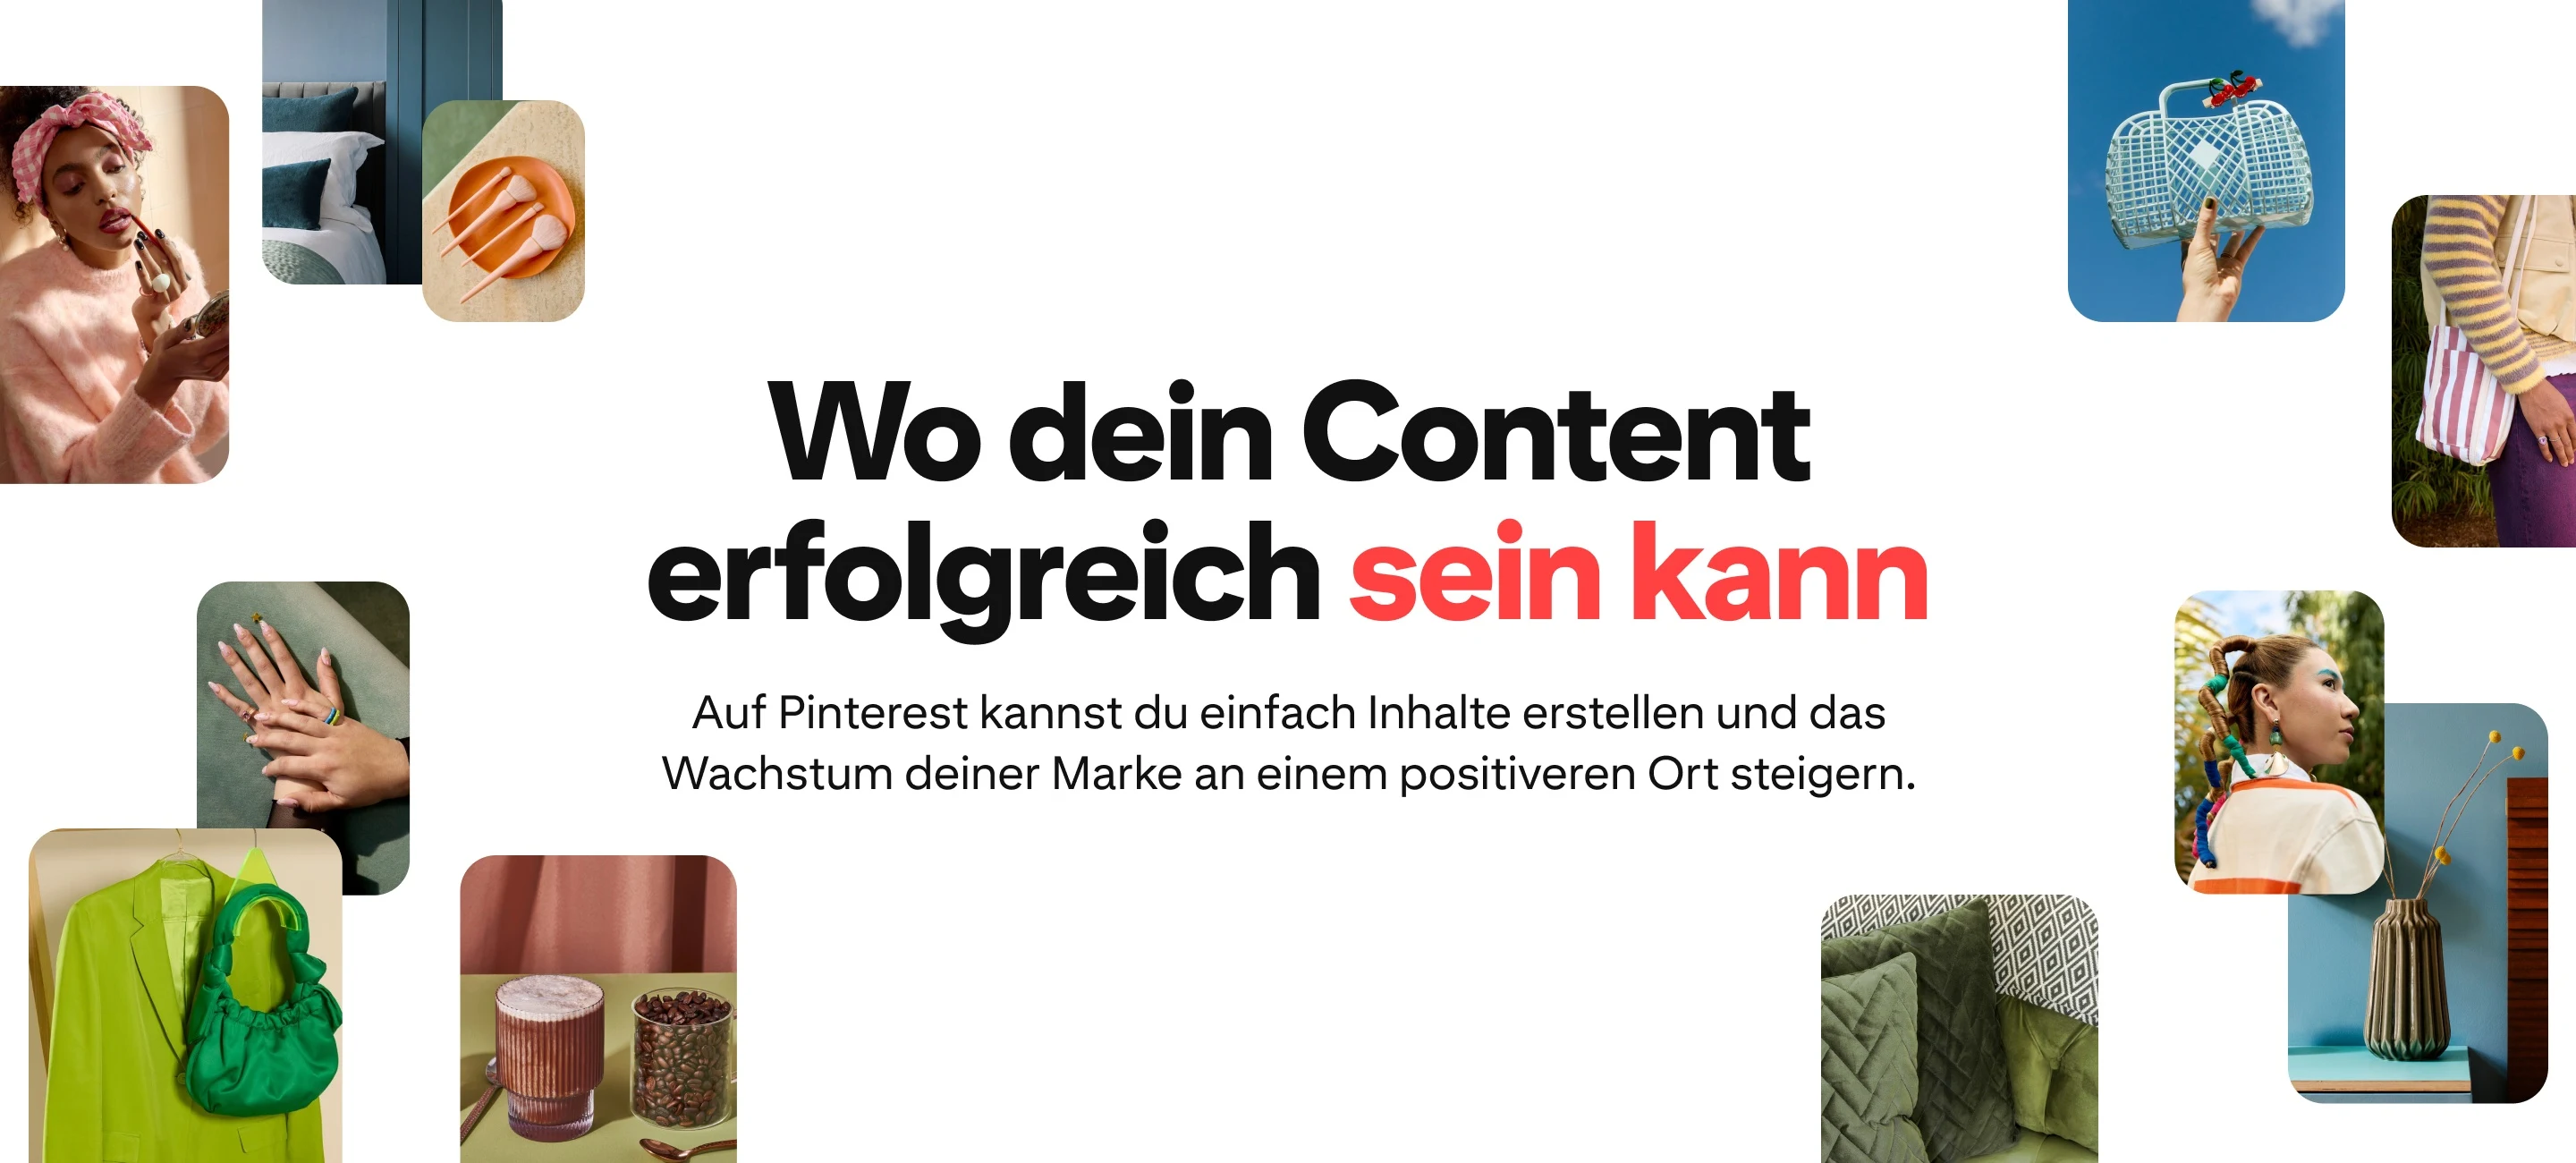 Collagen-Bilder auf einem weißen Hintergrund mit dem Text „Wo dein Content erfolgreich sein kann“ und „Auf Pinterest kannst du einfach Inhalte erstellen und das Wachstum deiner Marke an einem positiveren Ort steigern.“